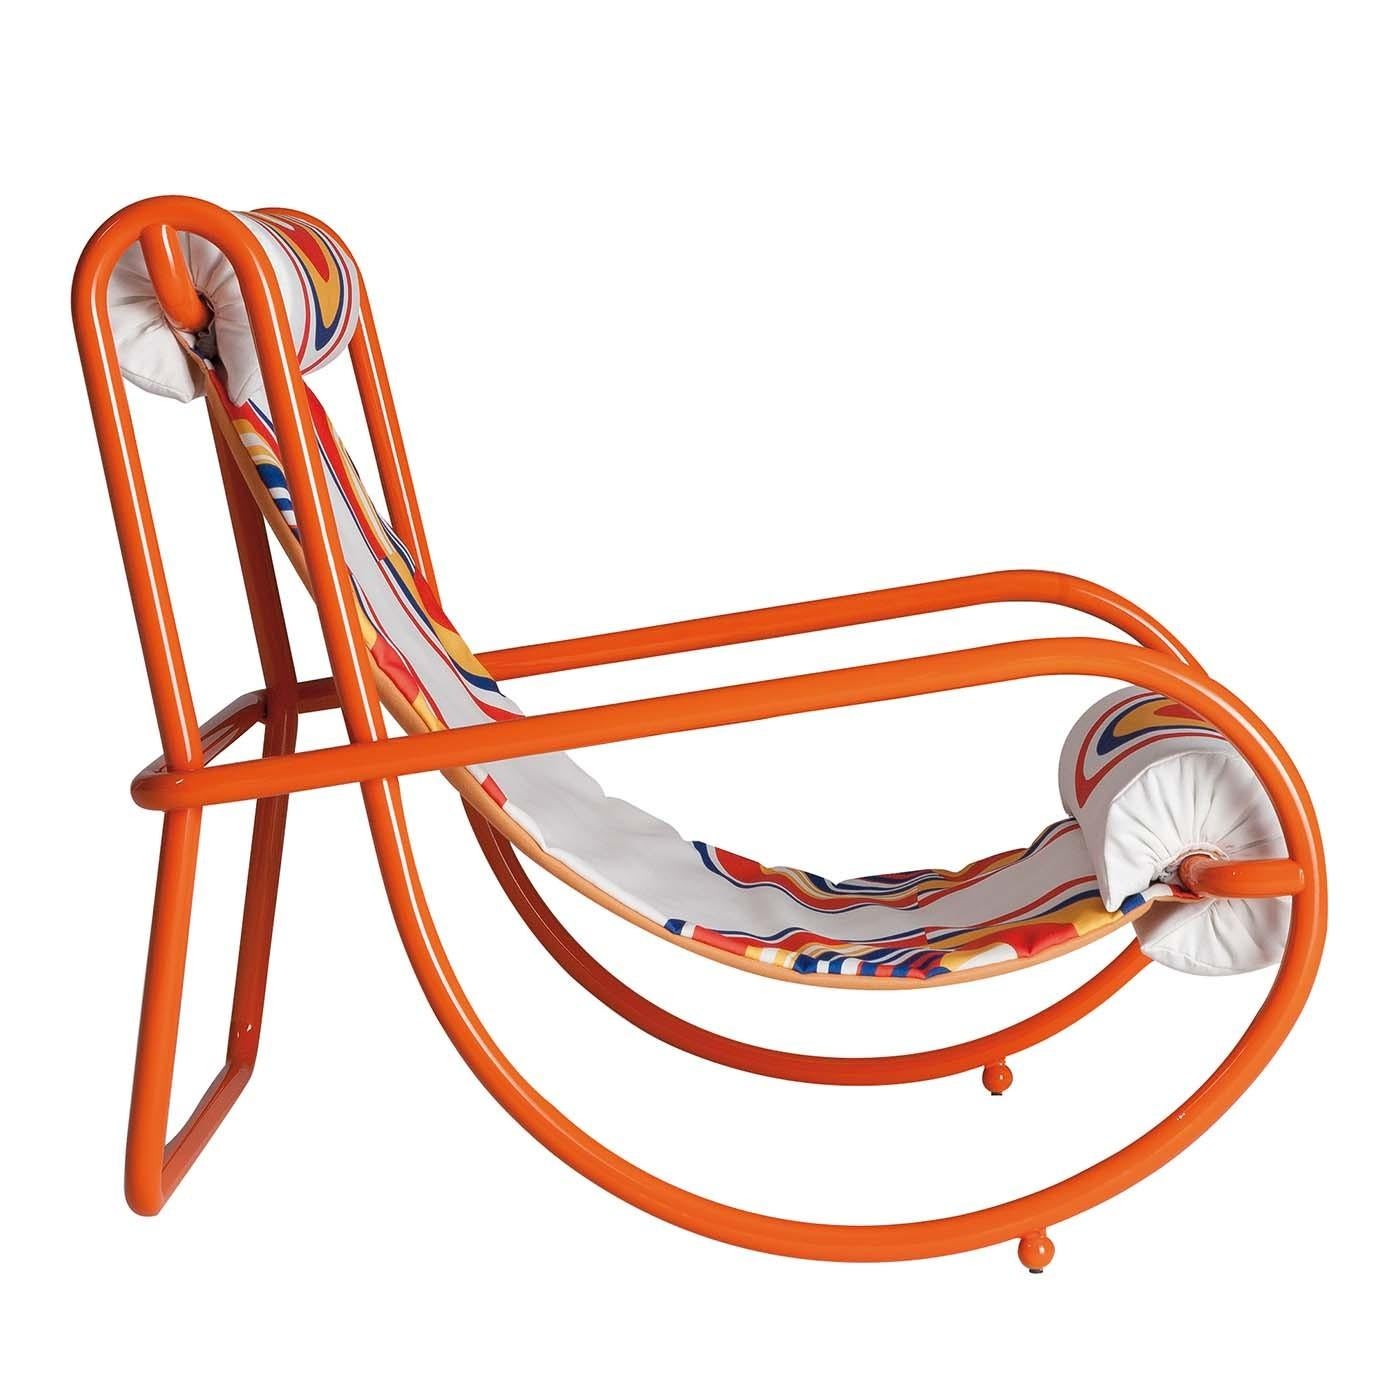 Faisant écho au traditionnel rocking-chair en bois incurvé, ce fauteuil unique transformera n'importe quel cadre extérieur en une expérience exceptionnelle d'esthétique et de fonctionnalité. La silhouette sinueuse et les volumes voluptueux de ce